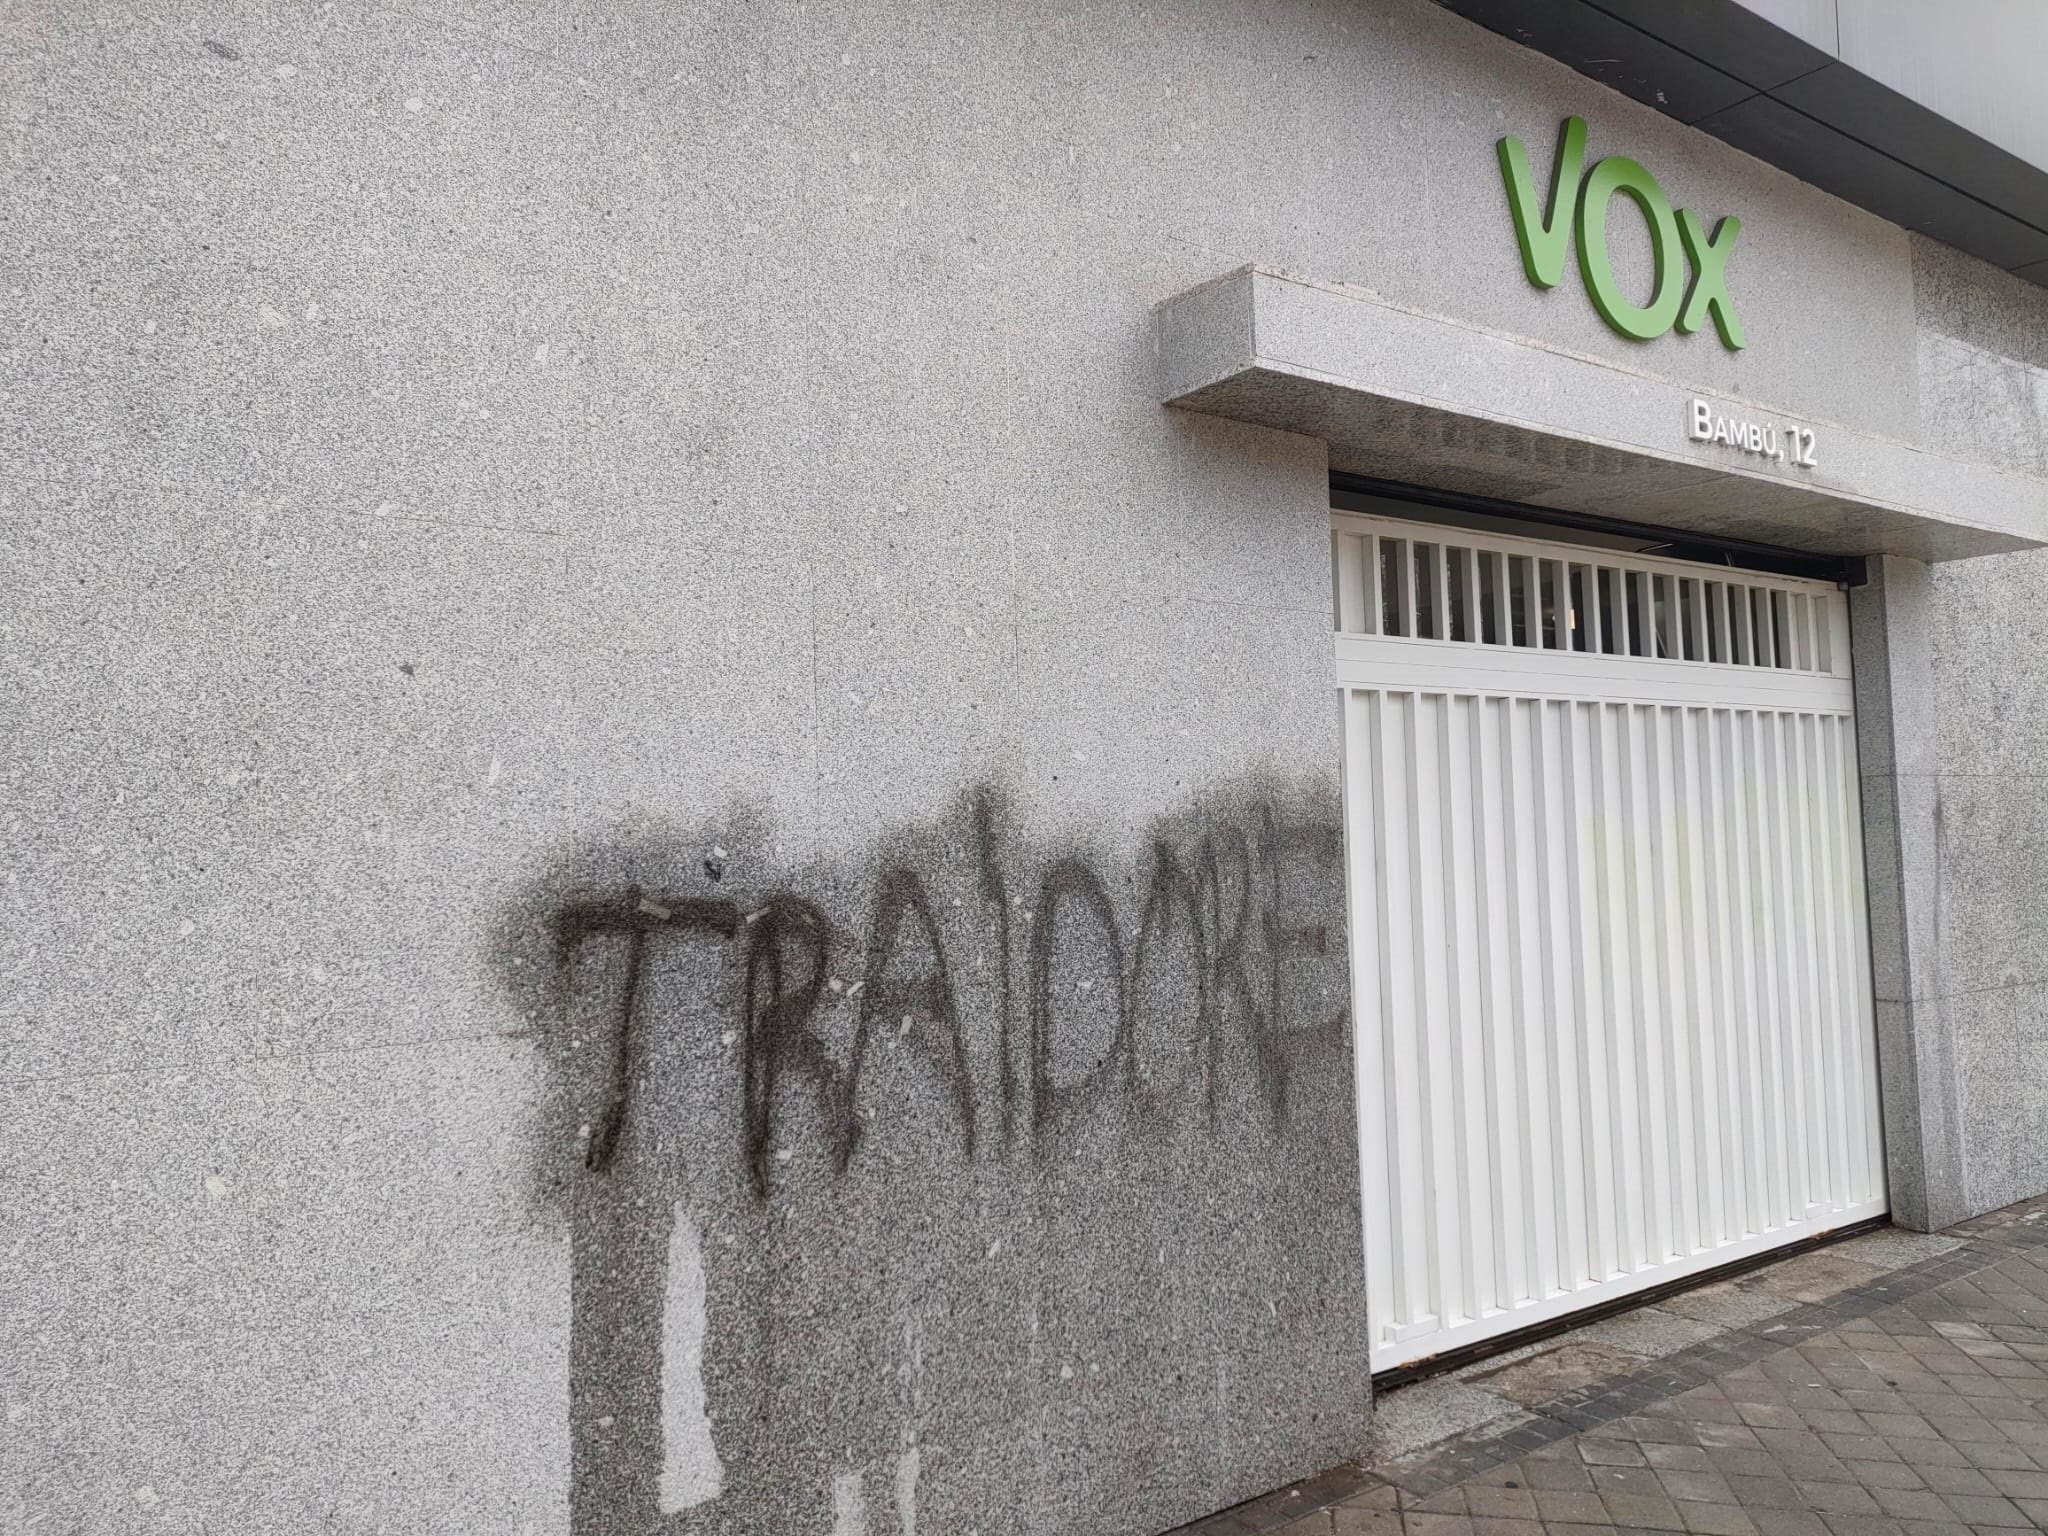 Pintades de 'traïdors' i insults homòfobs a la seu de Vox